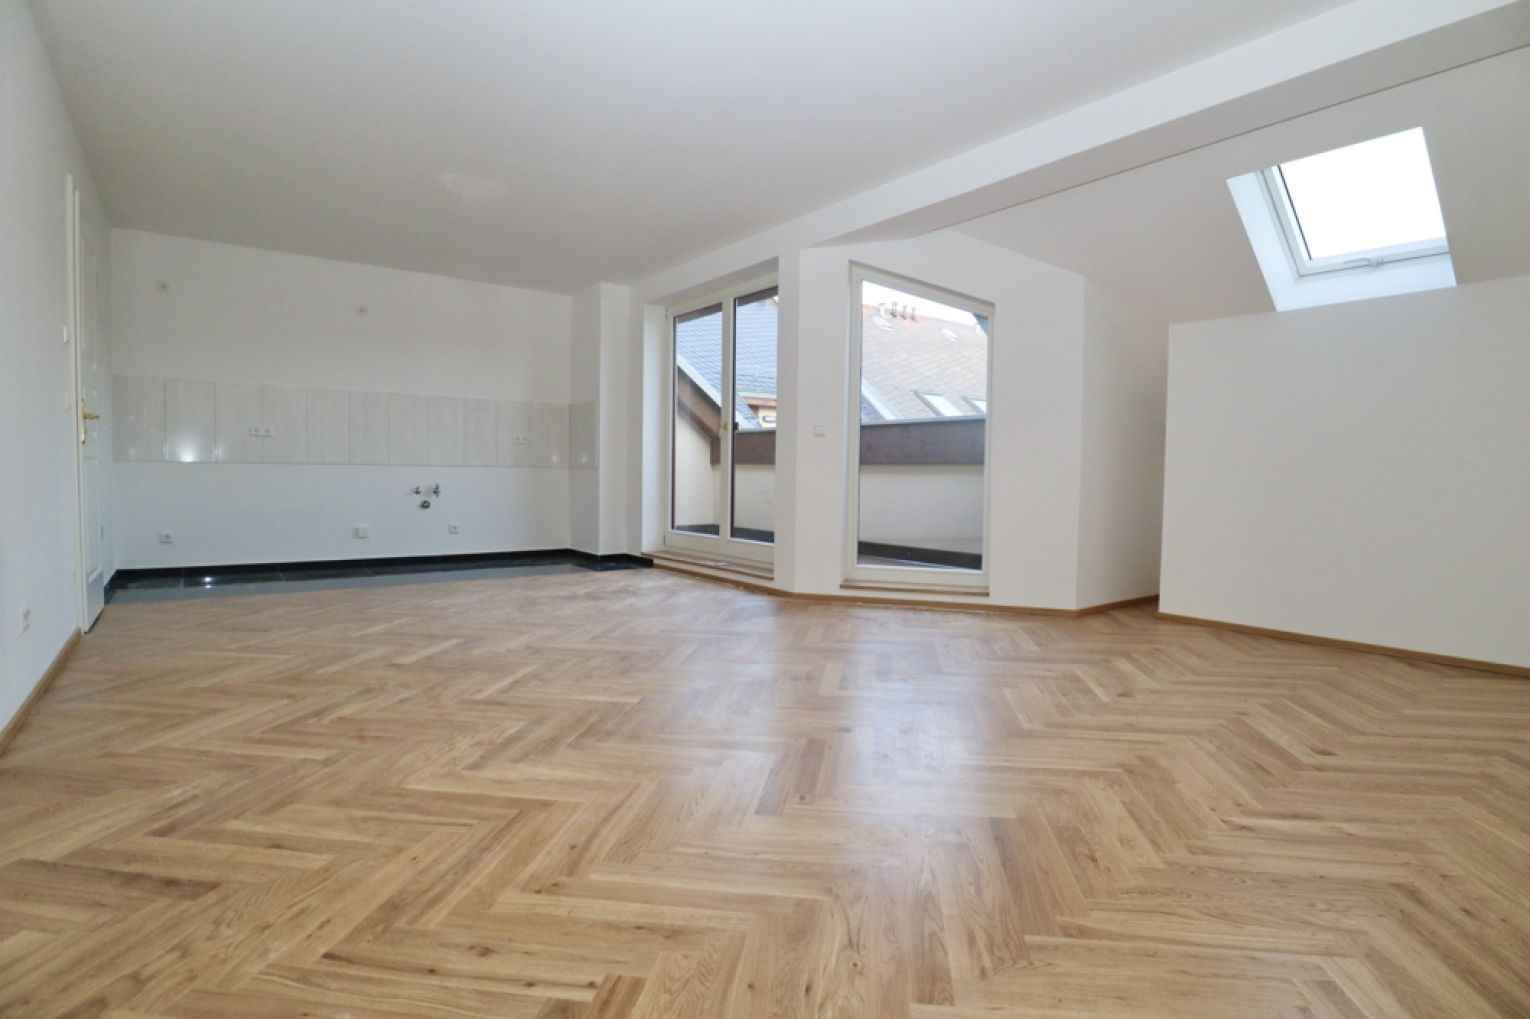 4-Raum Wohnung in Chemnitz • Loggia • Tageslichtbad • ERSTBEZUG • Sonnenberg • jetzt mieten